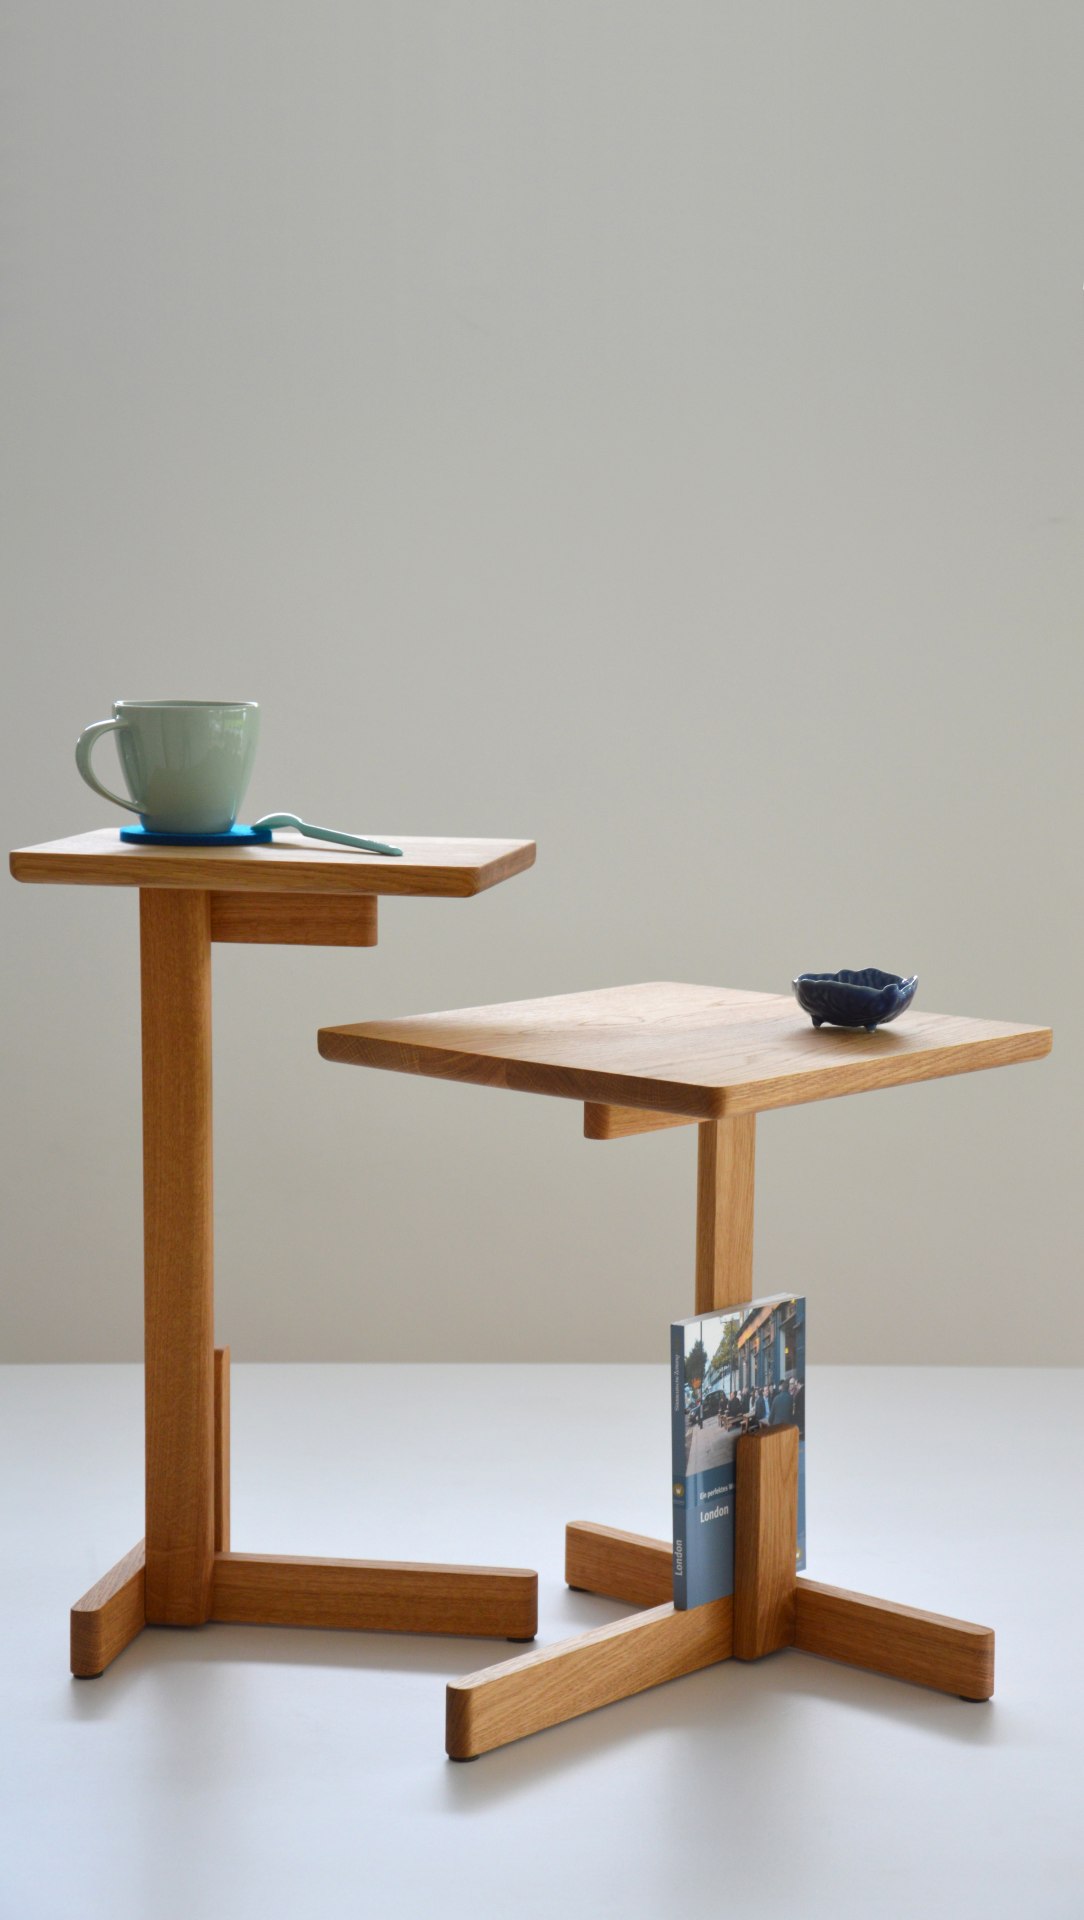 Der schlichte Beistelltisch Hardy wurde aus Eichenholz gefertigt. Besonders auffällig ist seine besondere Form. Der Tisch ist ein Produkt der Marke Jan Kurtz.